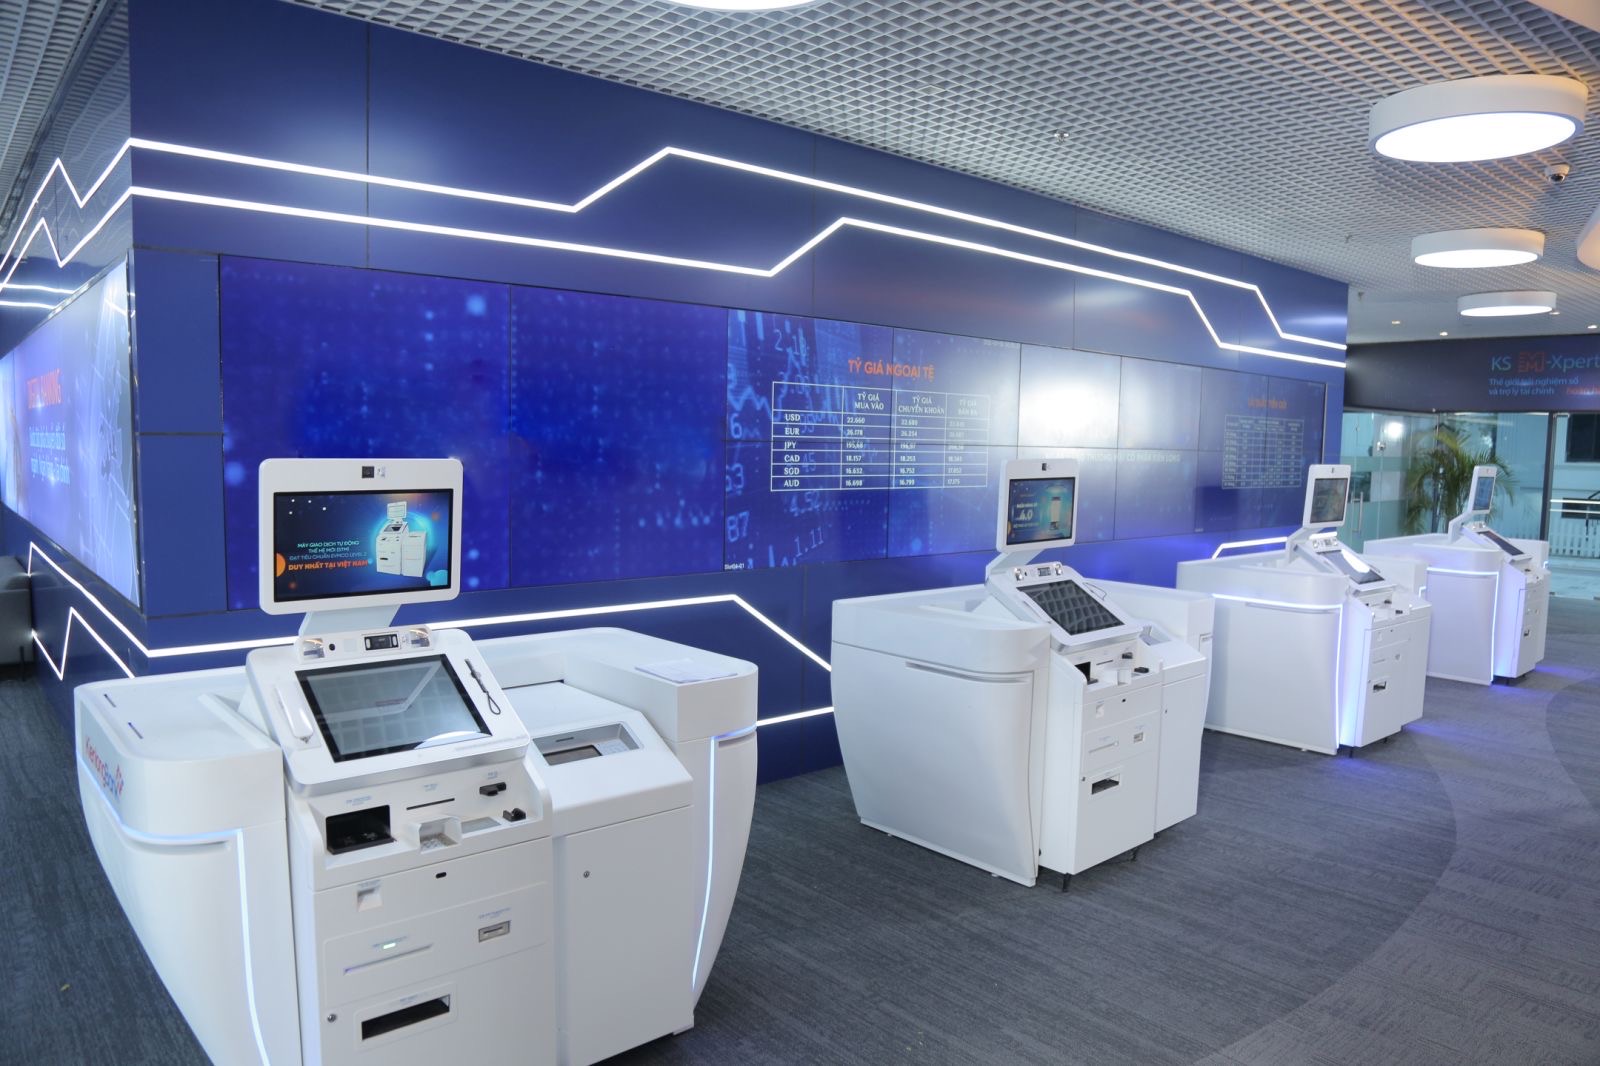 Máy giao máy giao dịch ngân hàng tự động STM - sản phẩm chủ lực của Tập đoàn công nghệ Unicloud - Ảnh 2.